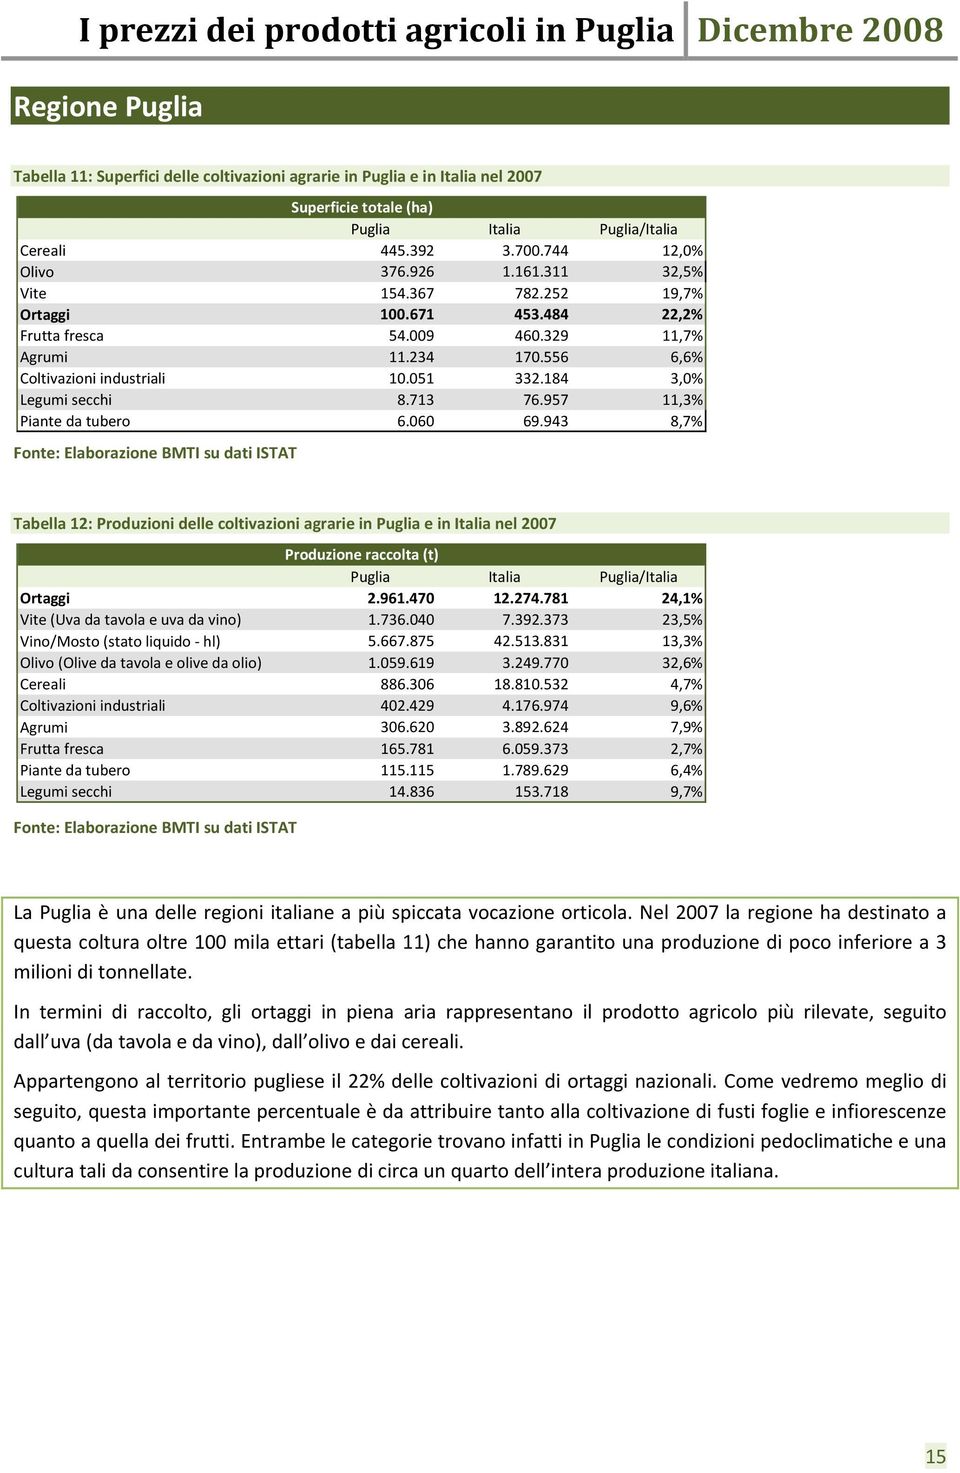 957 11,3% Piante da tubero 6.060 69.943 8,7% Tabella 12: Produzioni delle coltivazioni agrarie in Puglia e in Italia nel 2007 Produzione raccolta (t) Puglia Italia Puglia/Italia Ortaggi 2.961.470 12.